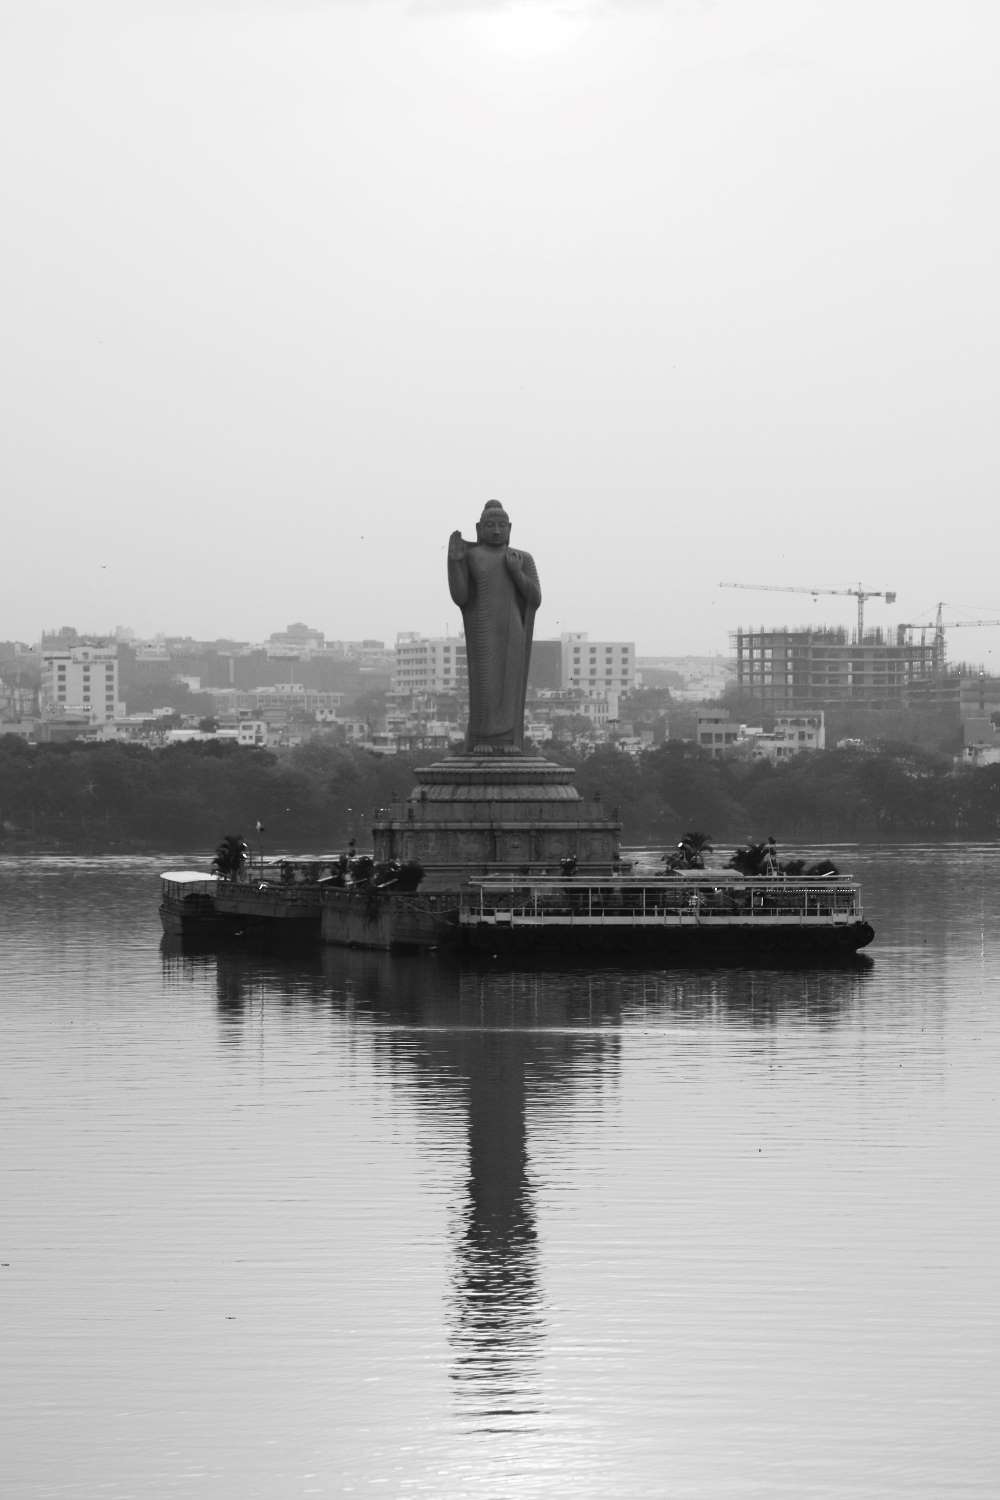 بحيرة حسين ساجار الهندية وأهم ما يميزها